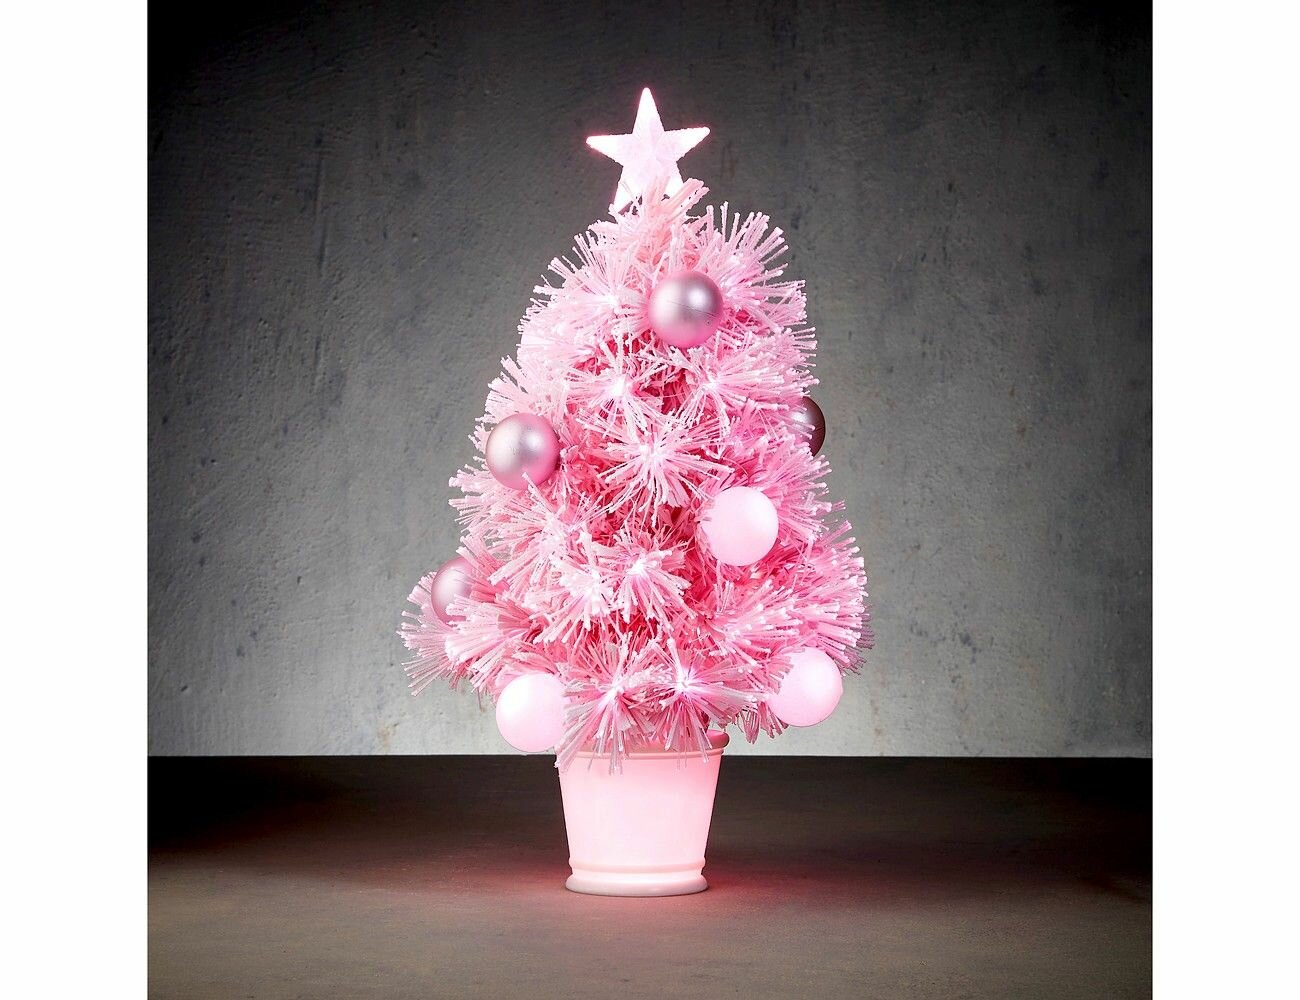 Оптико-волоконная ёлка кокетка джугги, розовая, 65 LED-огней, 60 см, контроллер, Edelman 1119047